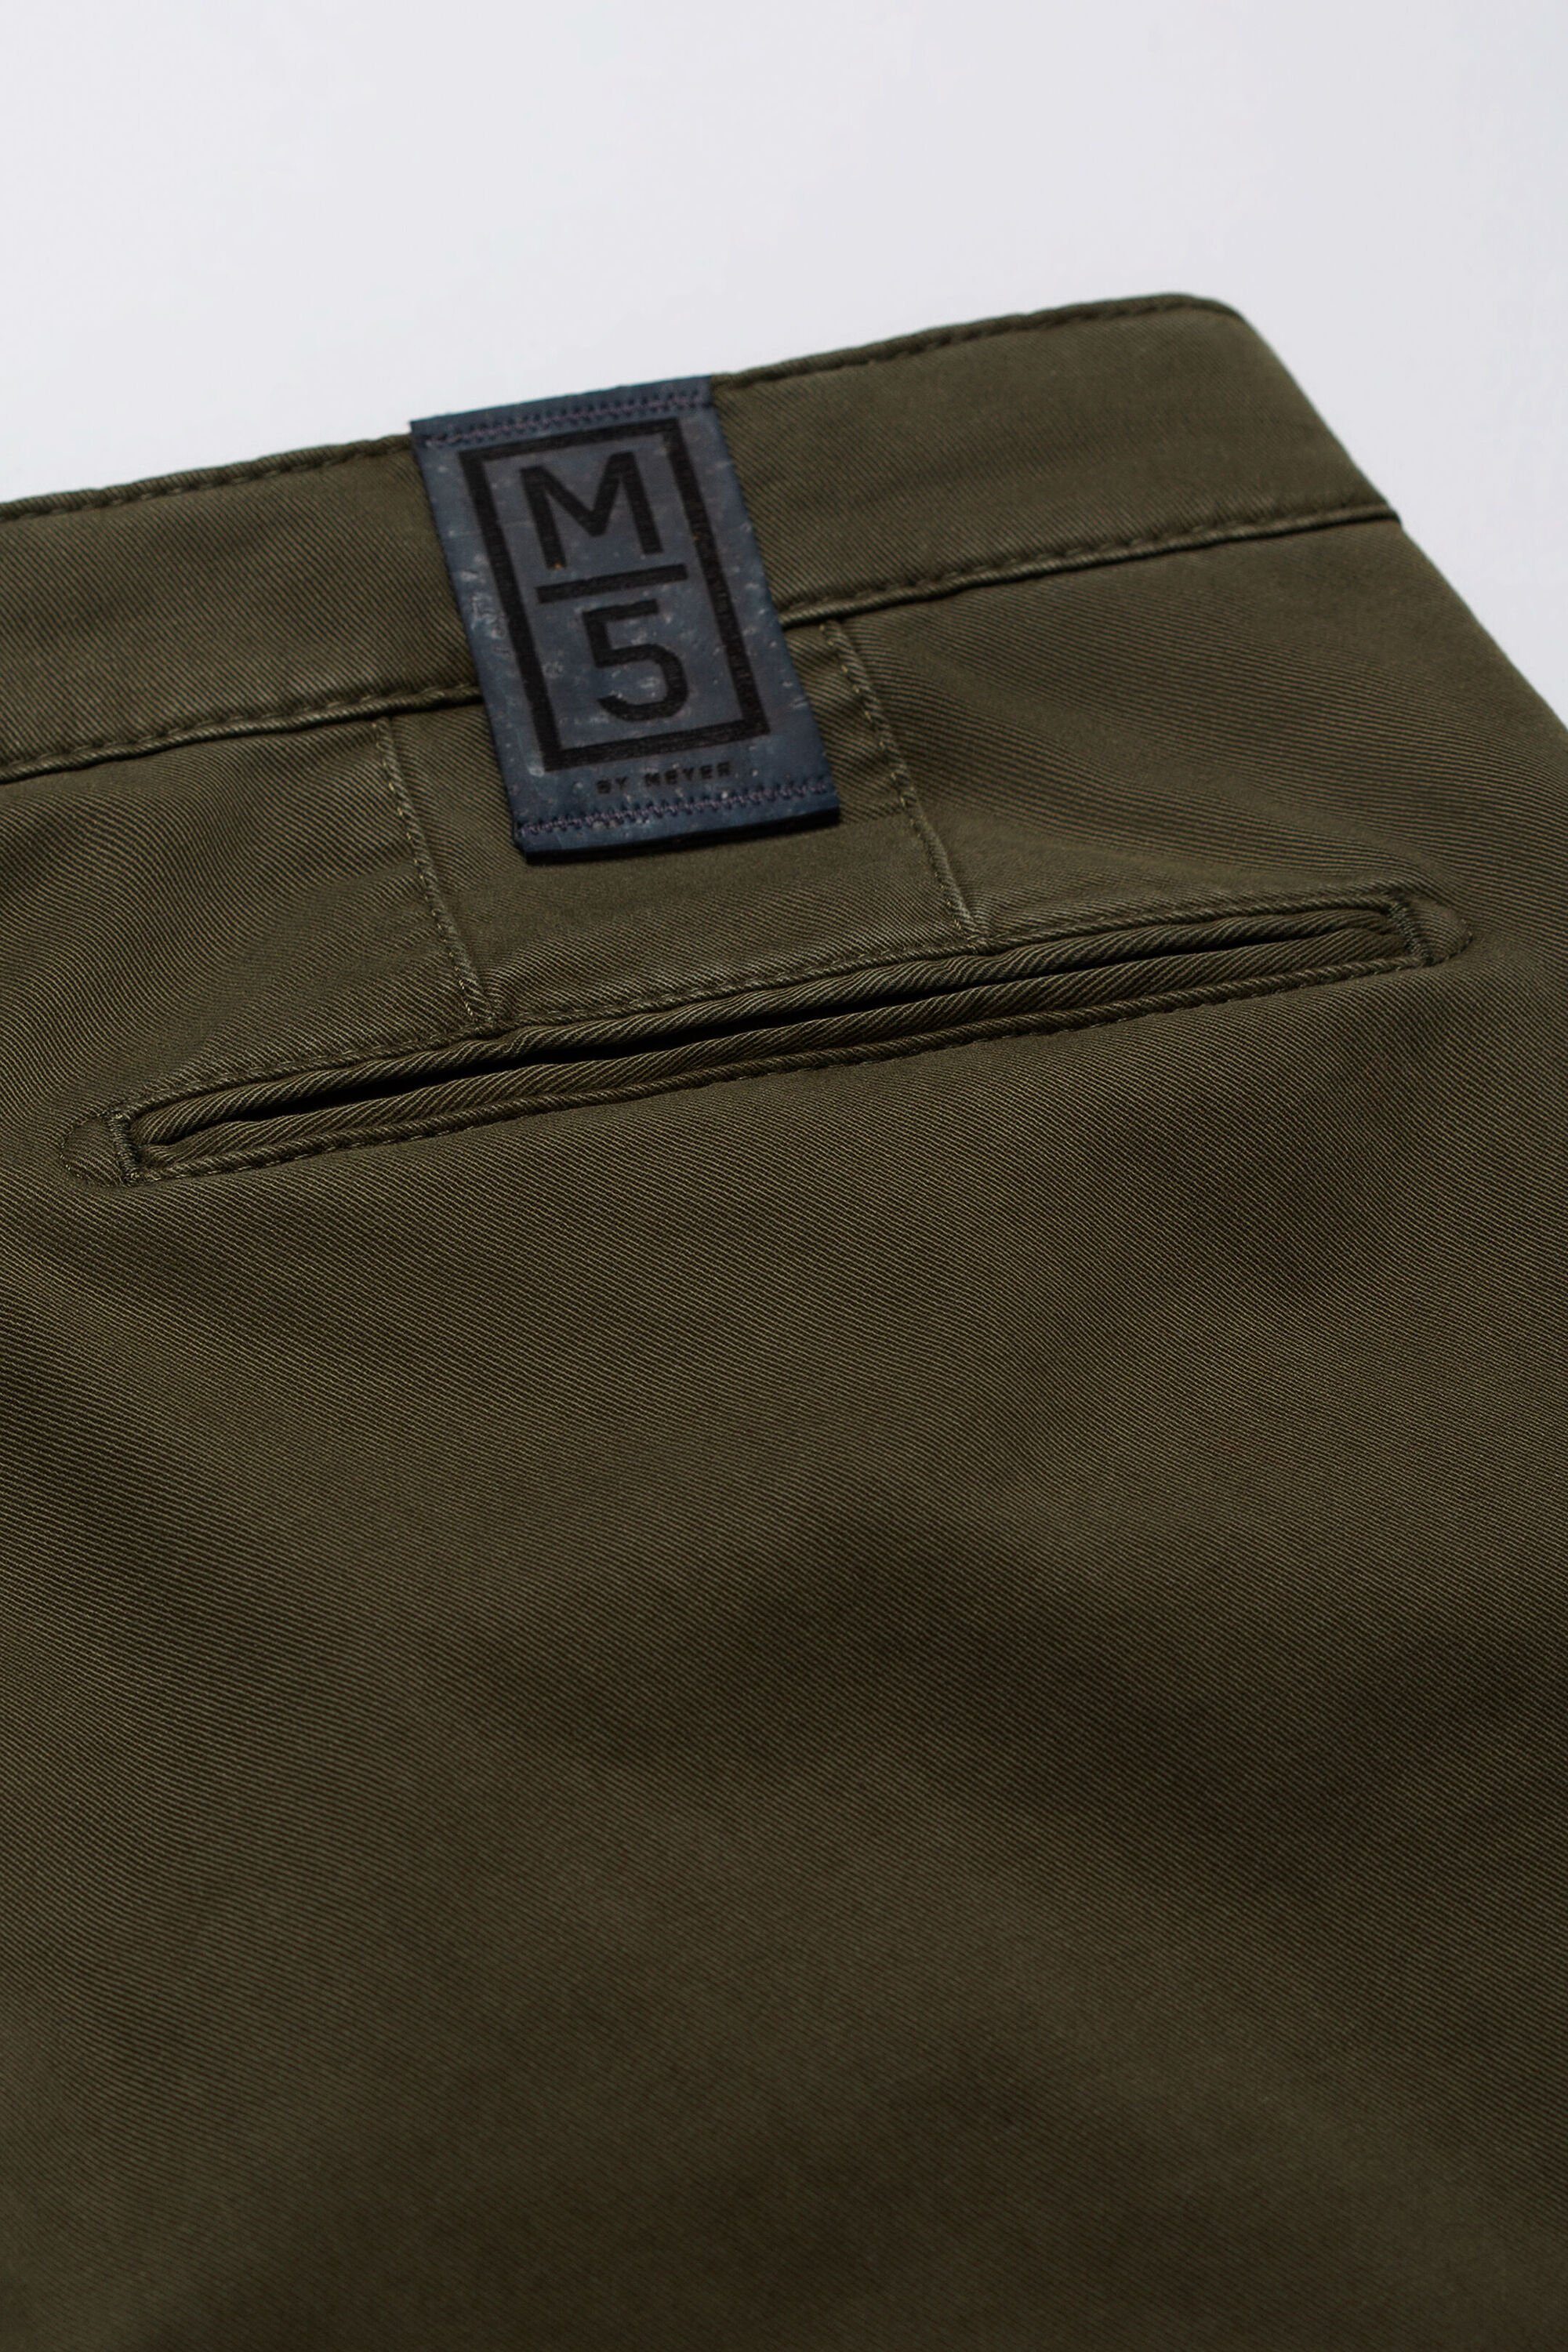 Stretch Design im M5 Chino MEYER unifarbenen Cotton Moderne grün Chinohose